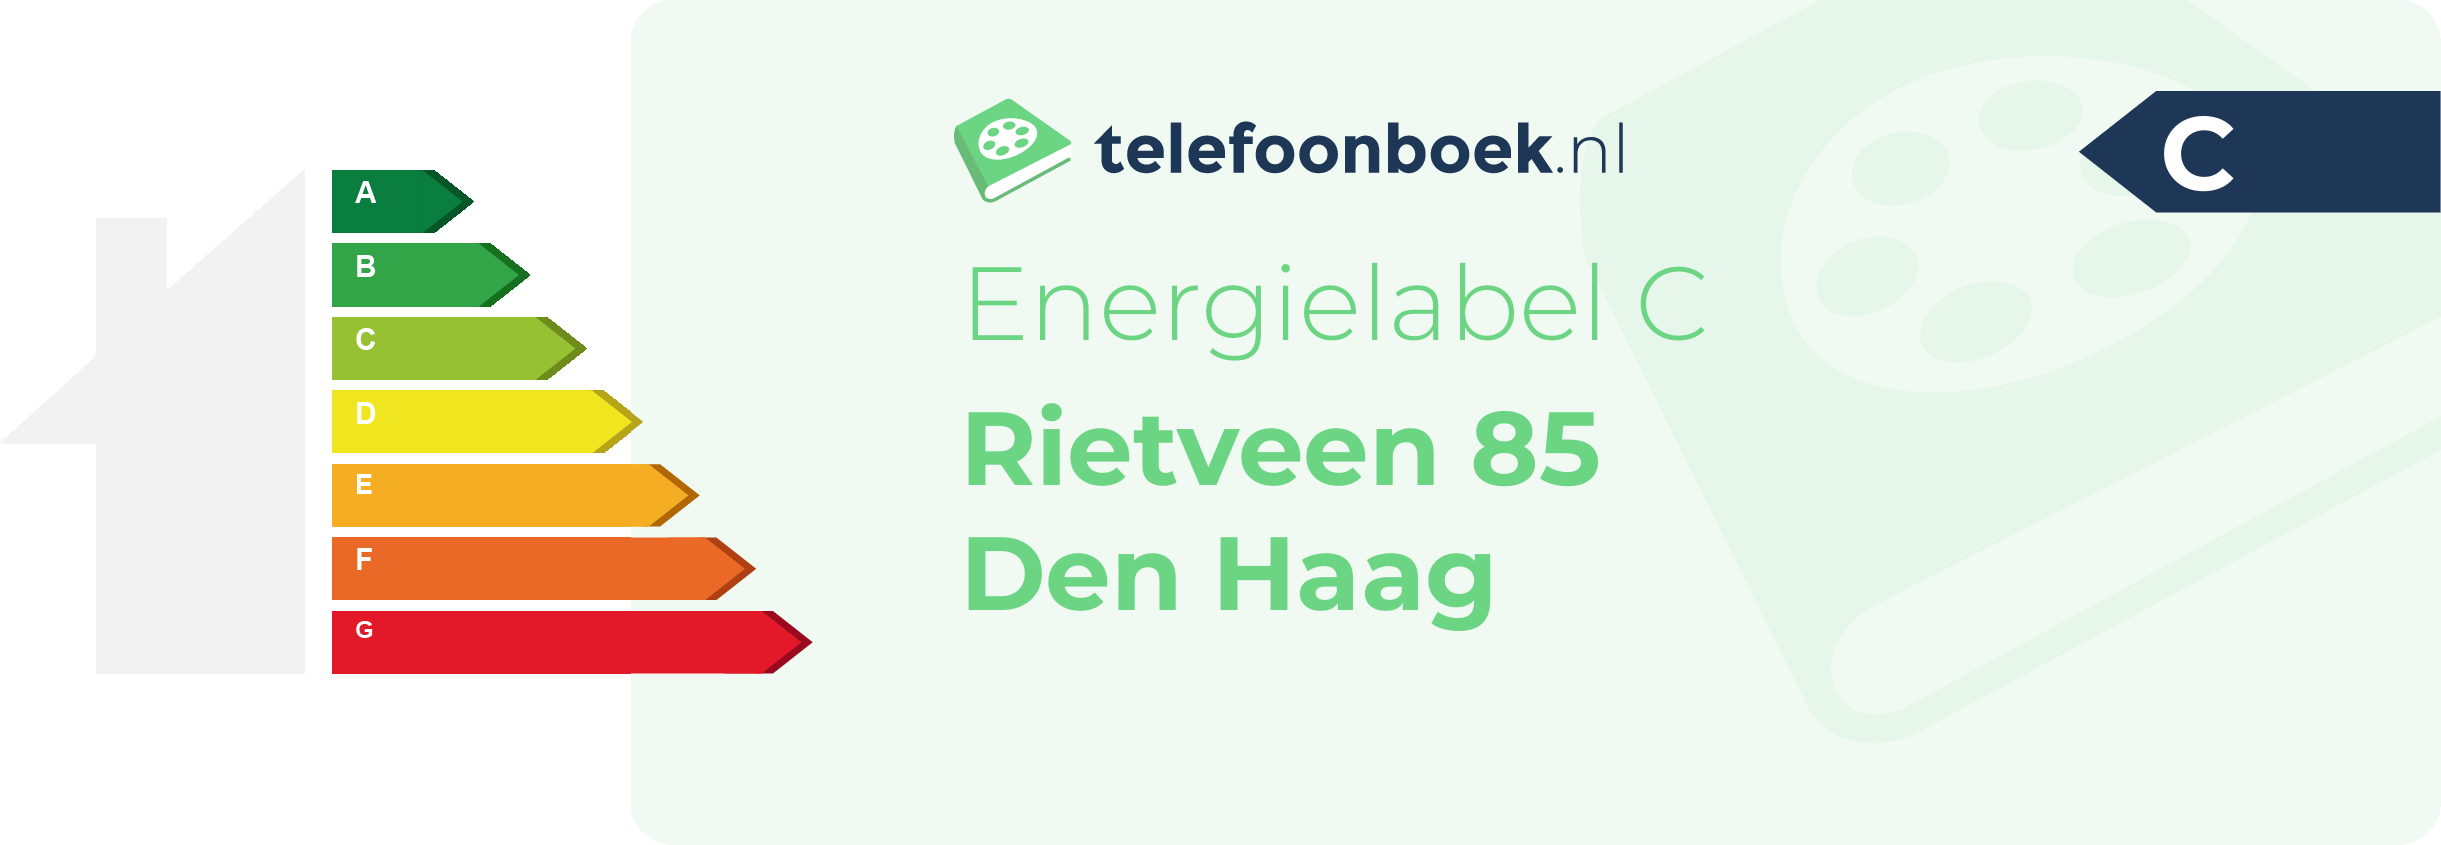 Energielabel Rietveen 85 Den Haag